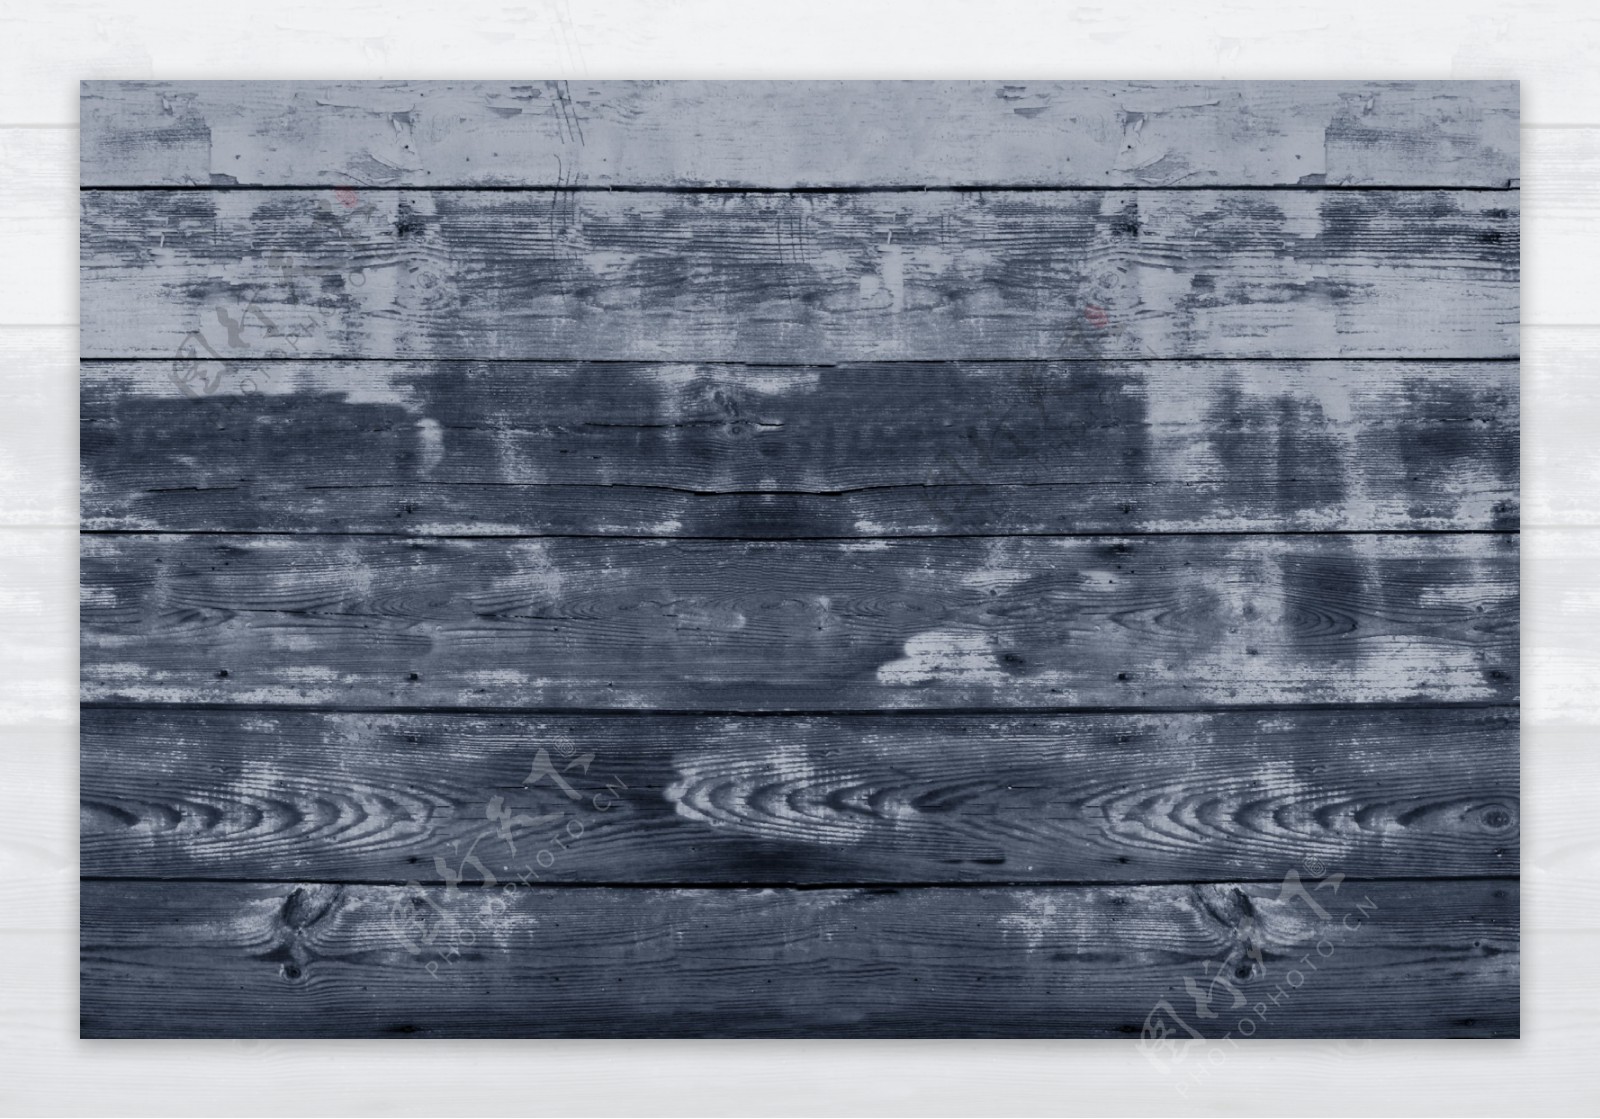 实木木板底纹背景高清图片